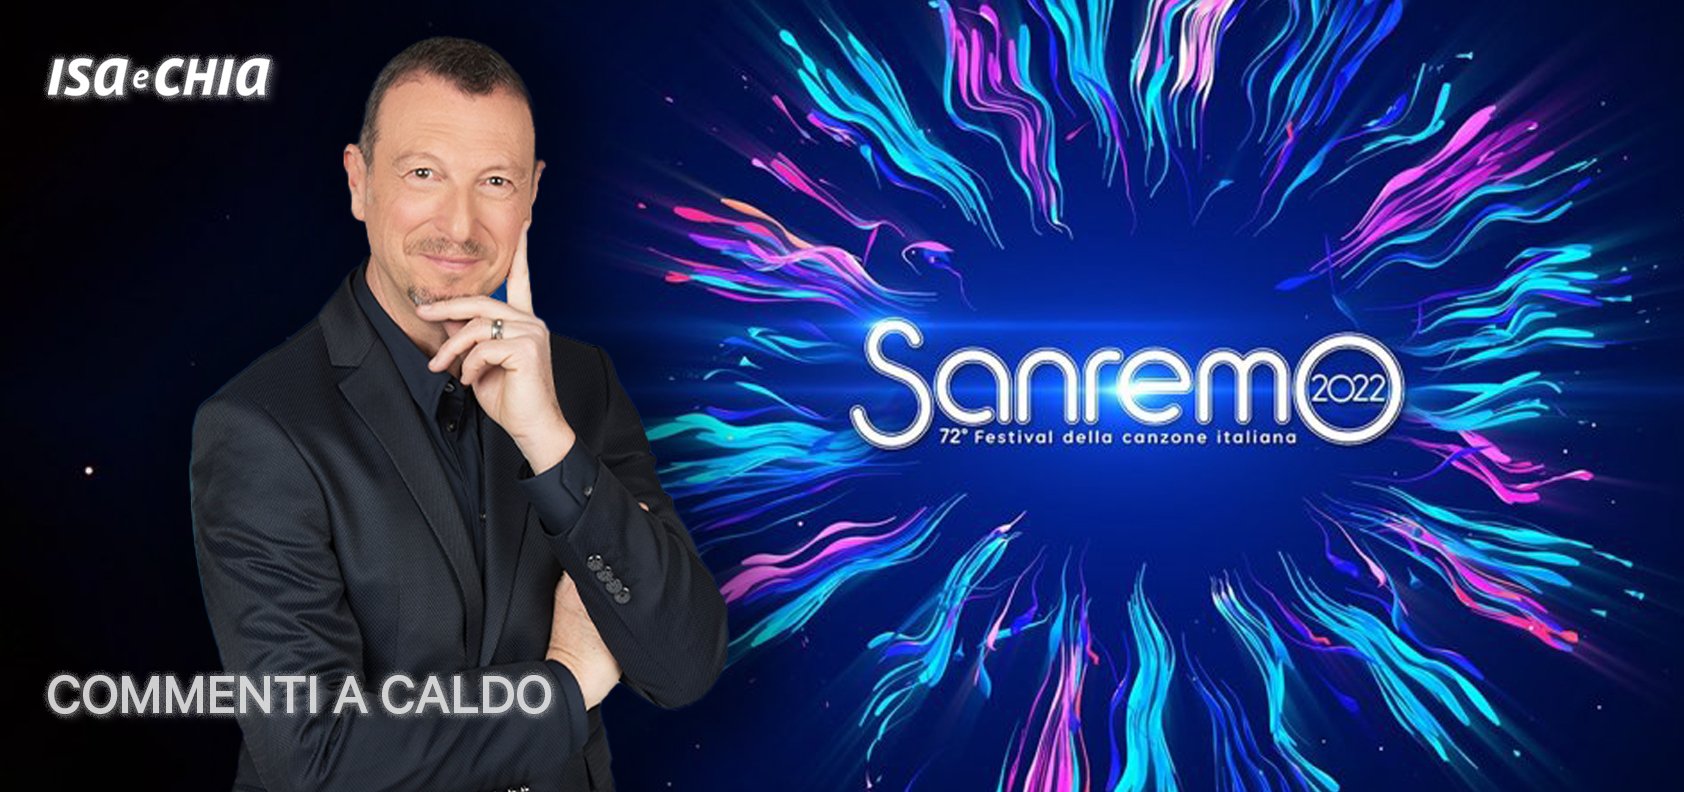 Sanremo 2022, la quarta serata: commenti a caldo